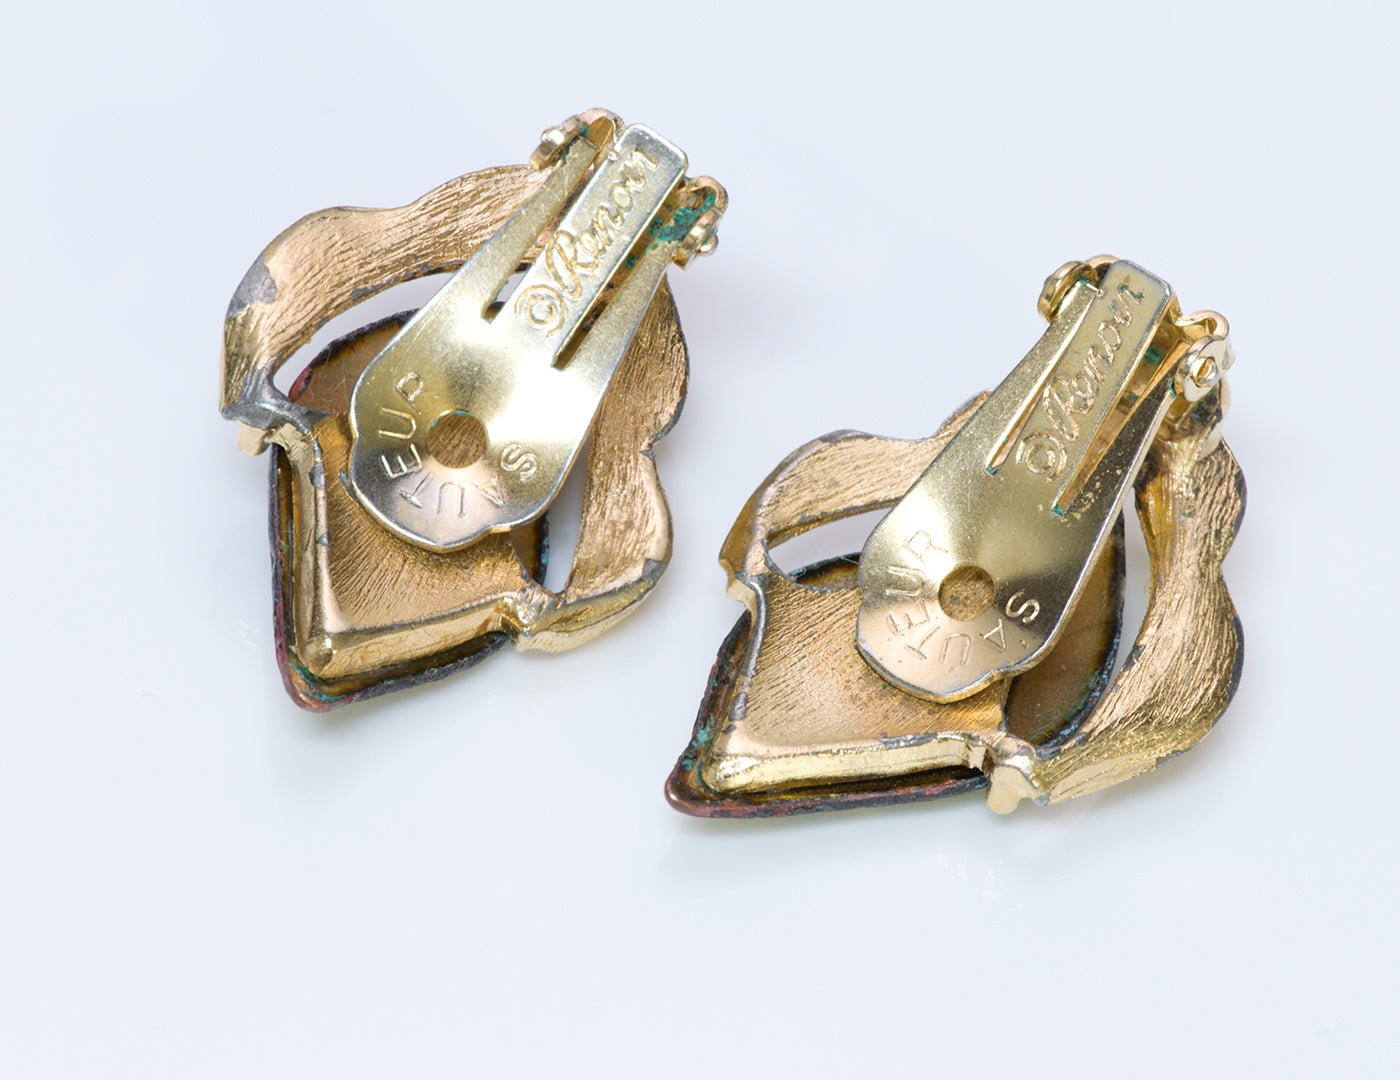 Renoir Sauteur Enamel Bracelet Earrings Brooch